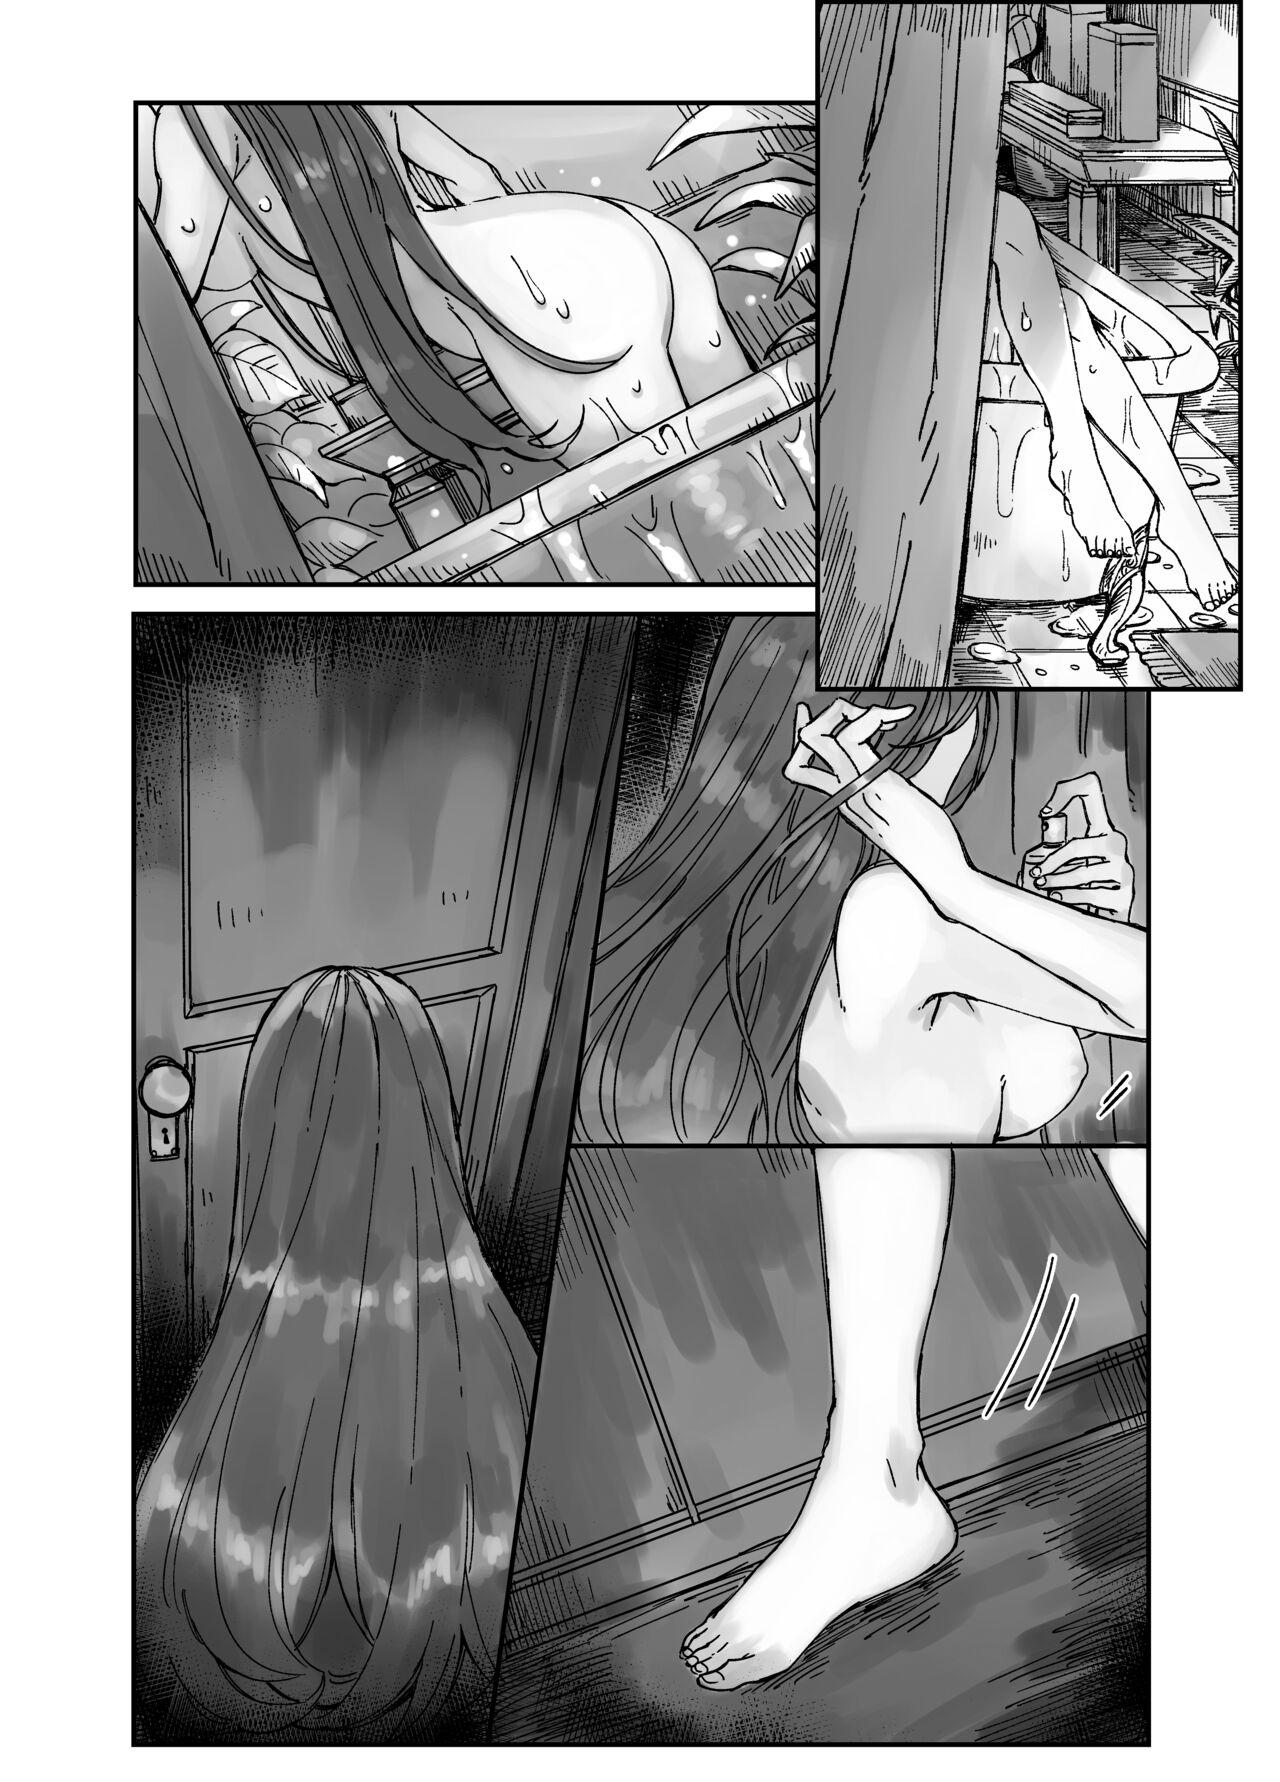 Spooning Skeb Request Manga - Original Teens - Picture 1